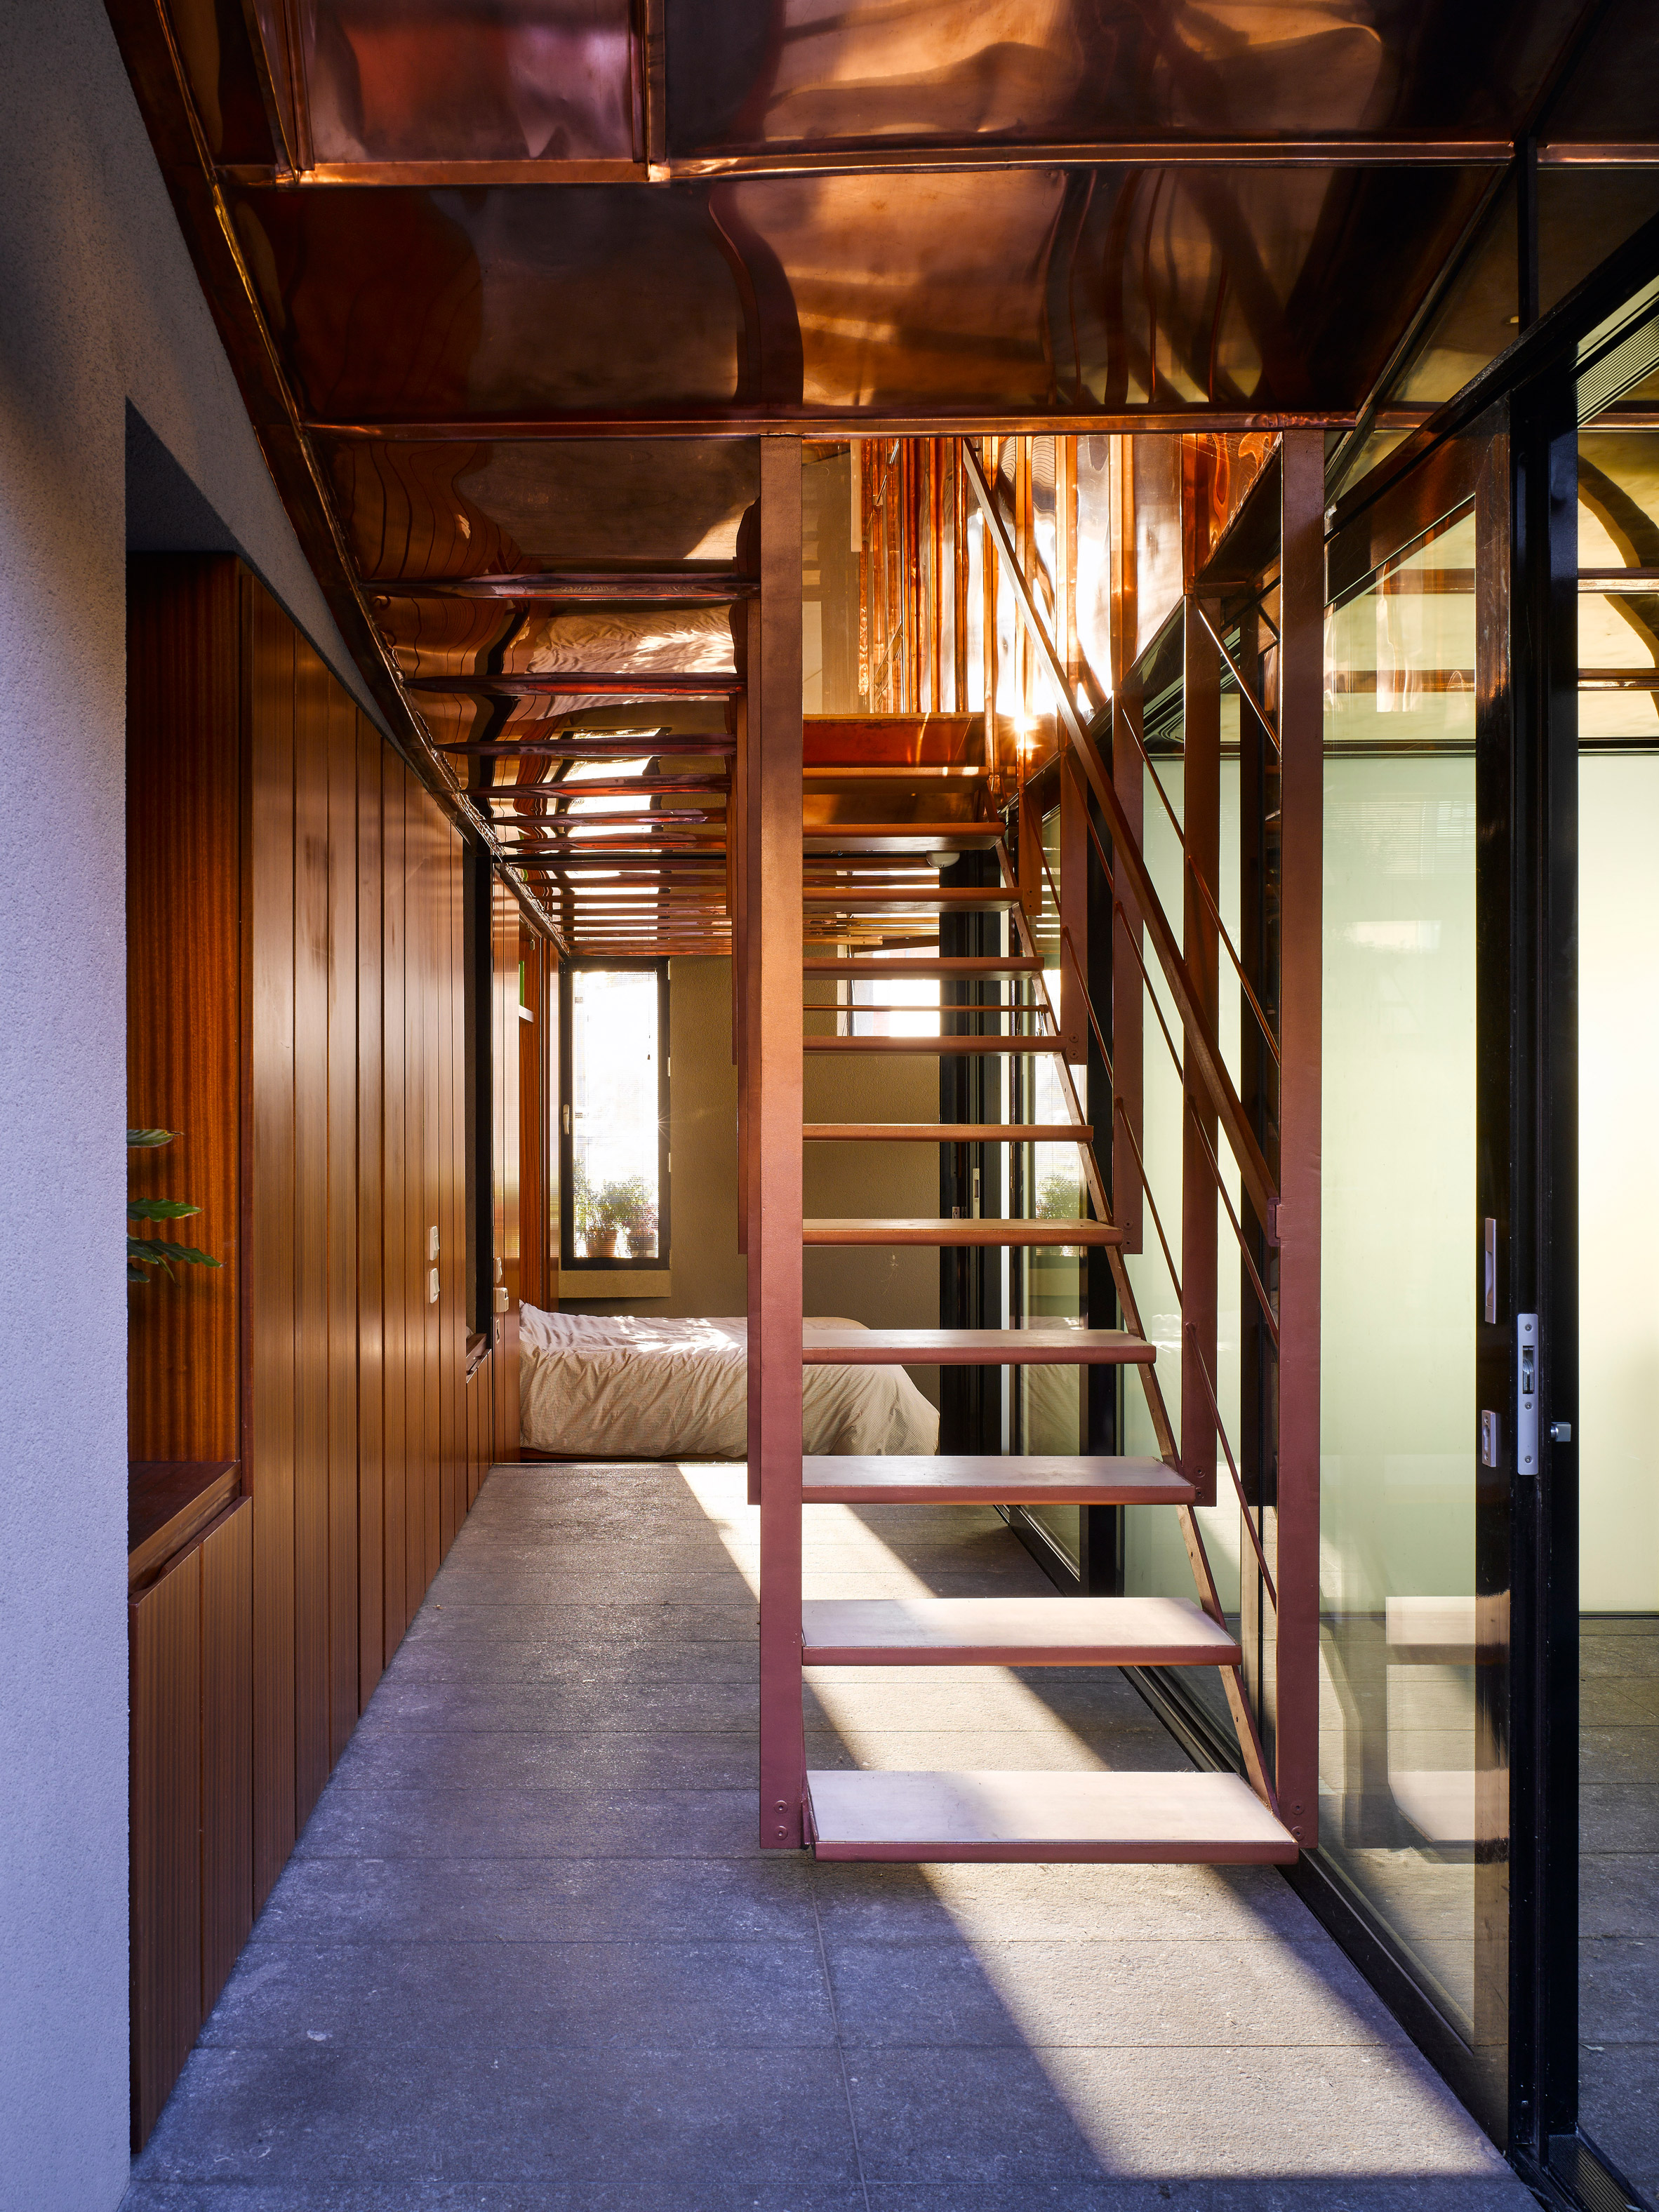 K House by ArchitectsTM